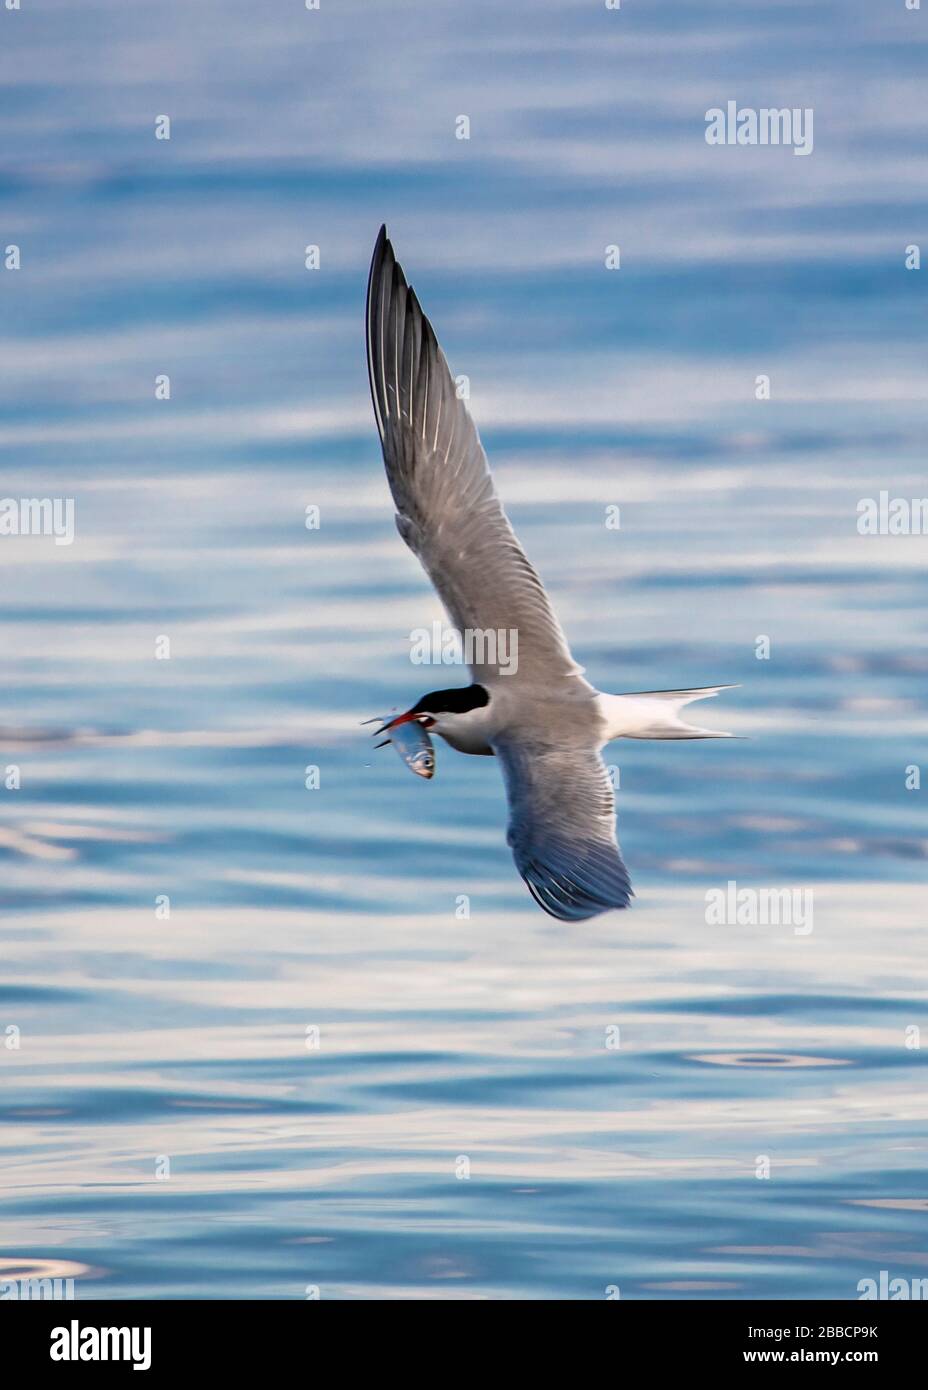 Common tern (Sterna hirundo) catching fish, Lake Ontario Stock Photo